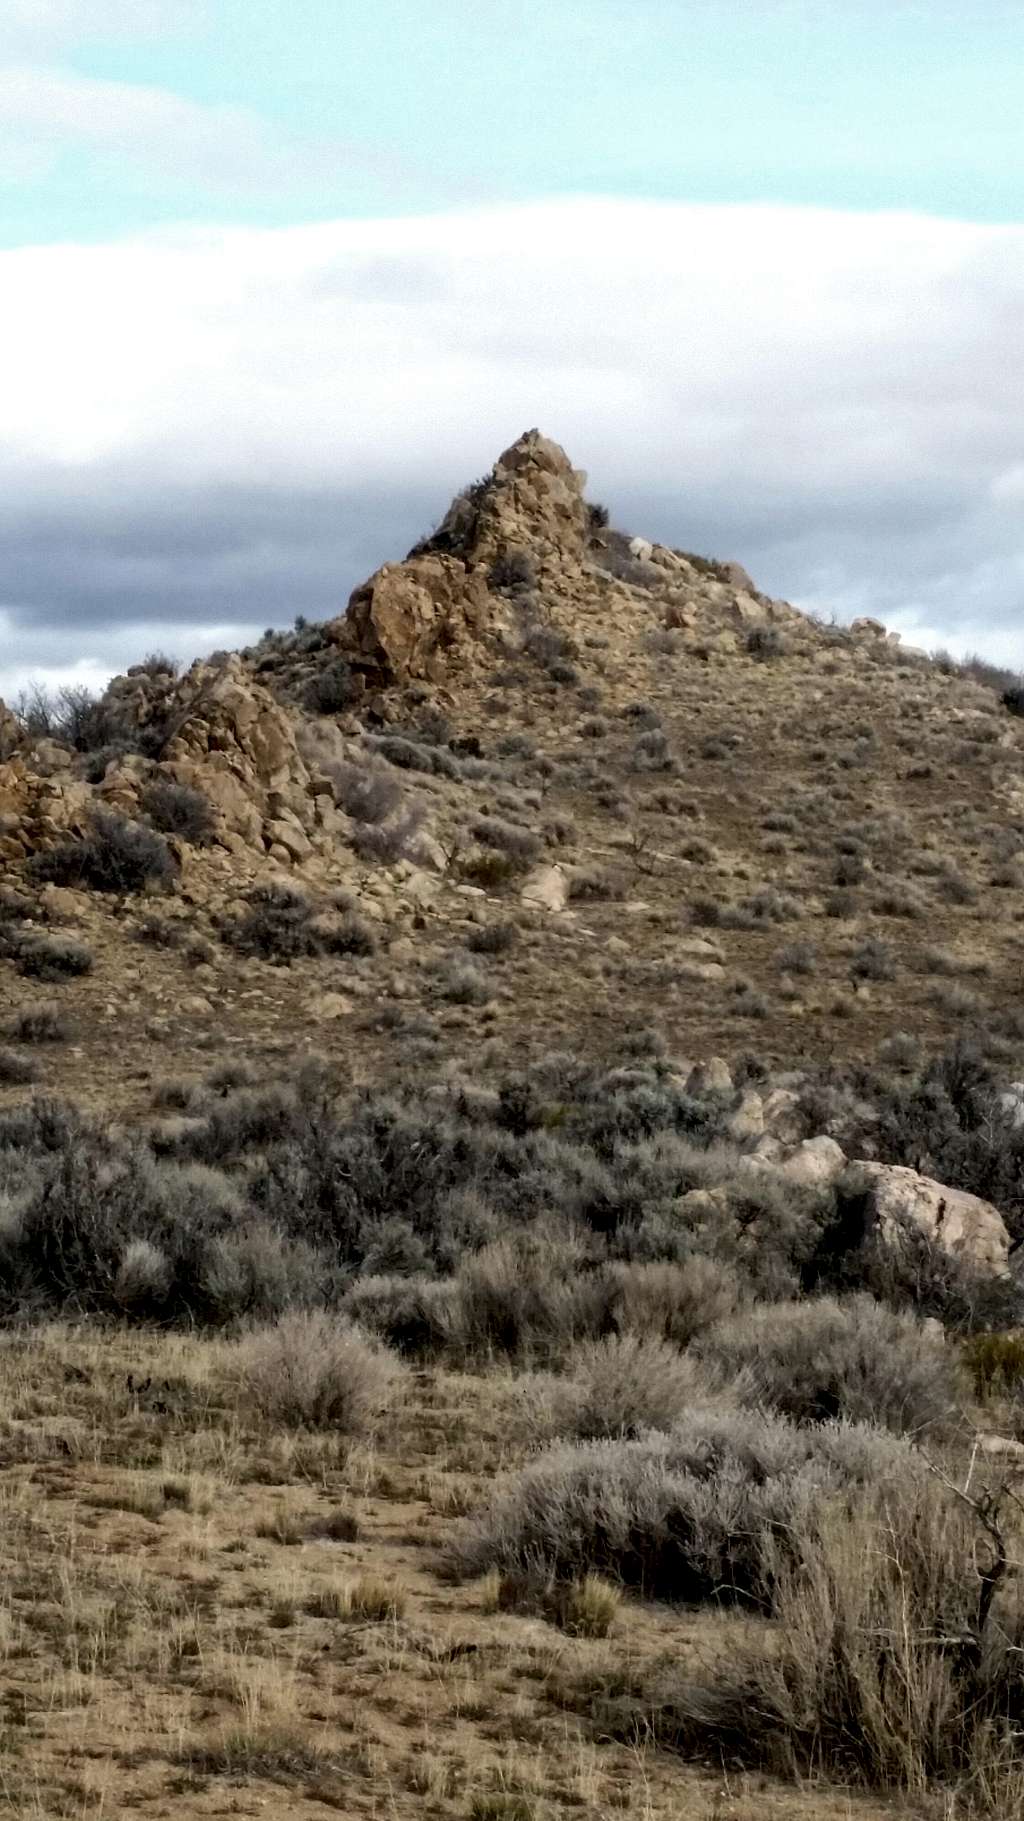 Pyramid rock along the rocky ridge